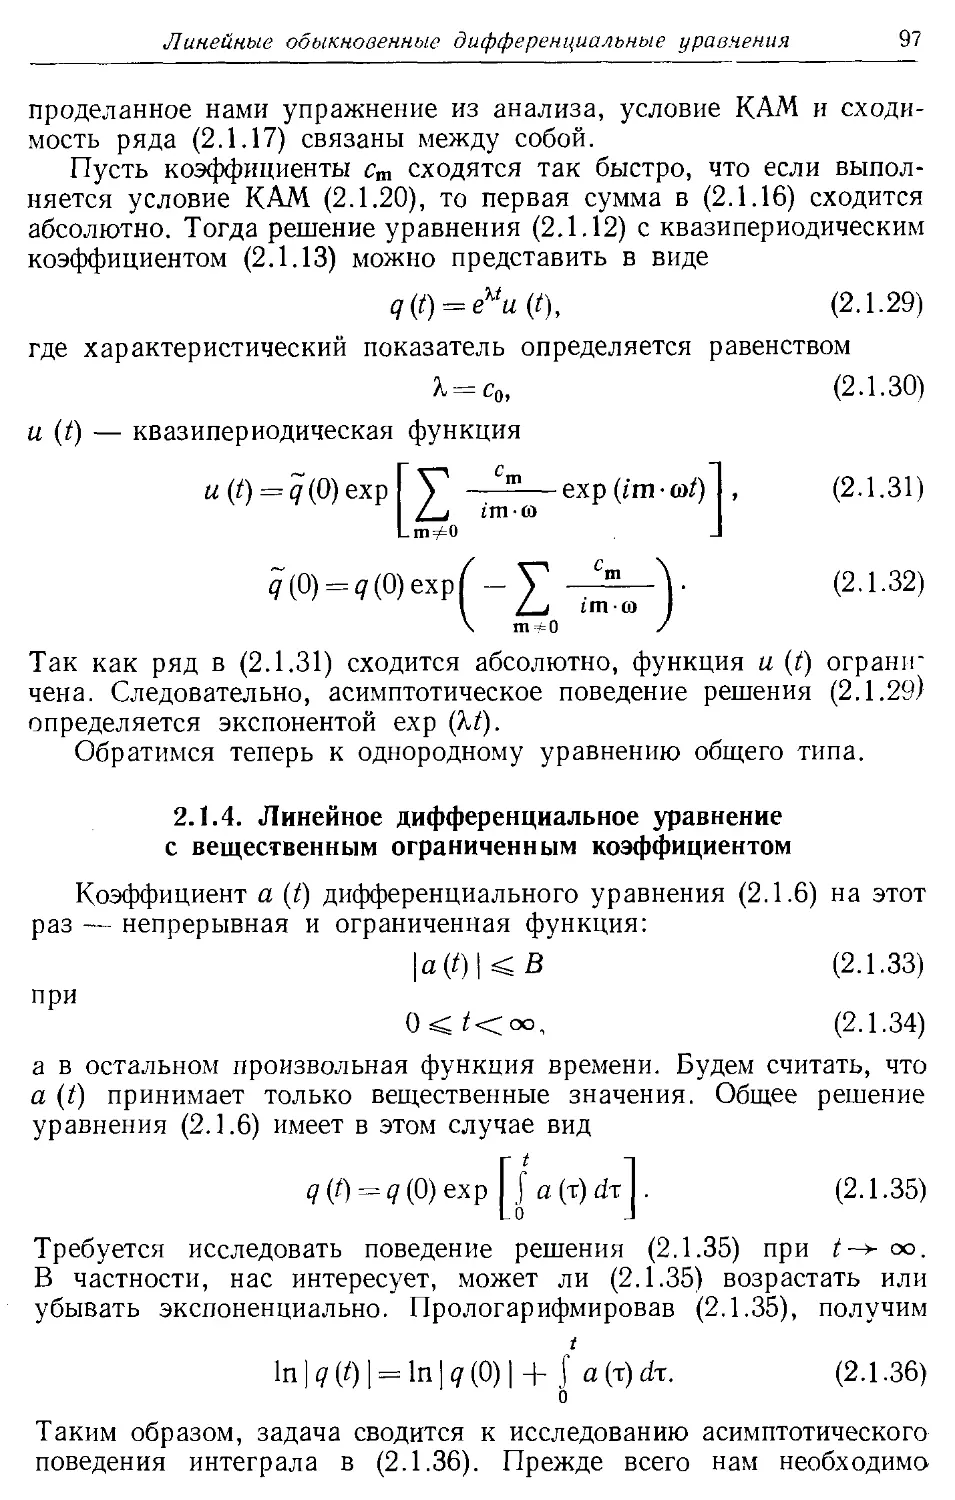 2.1.4. Линейное дифференциальное уравнение с вещественным ограниченным коэффициентом